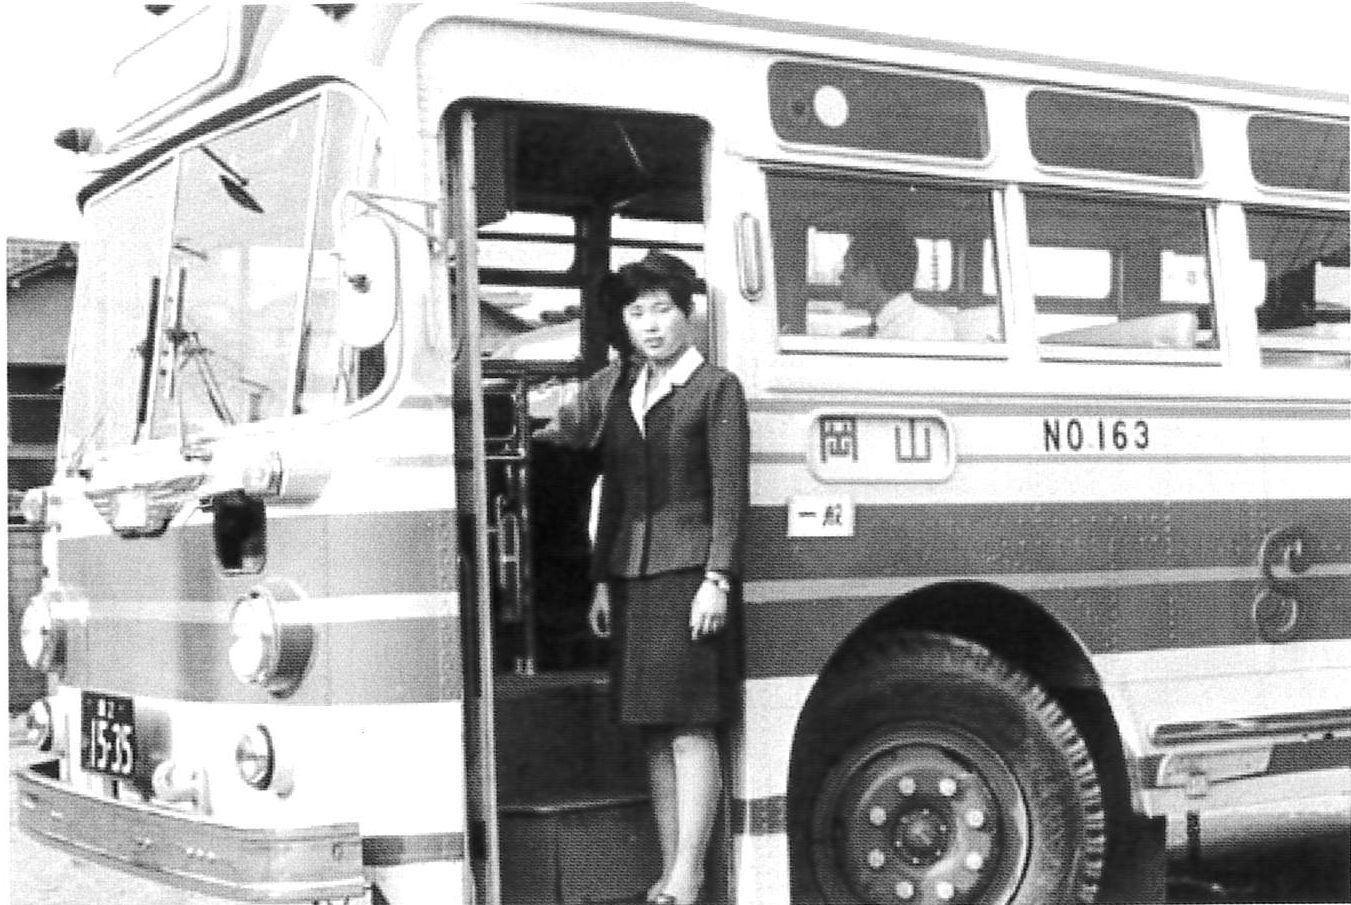 バスの車掌も、女性の職業として注目されていた | コモレバWEB